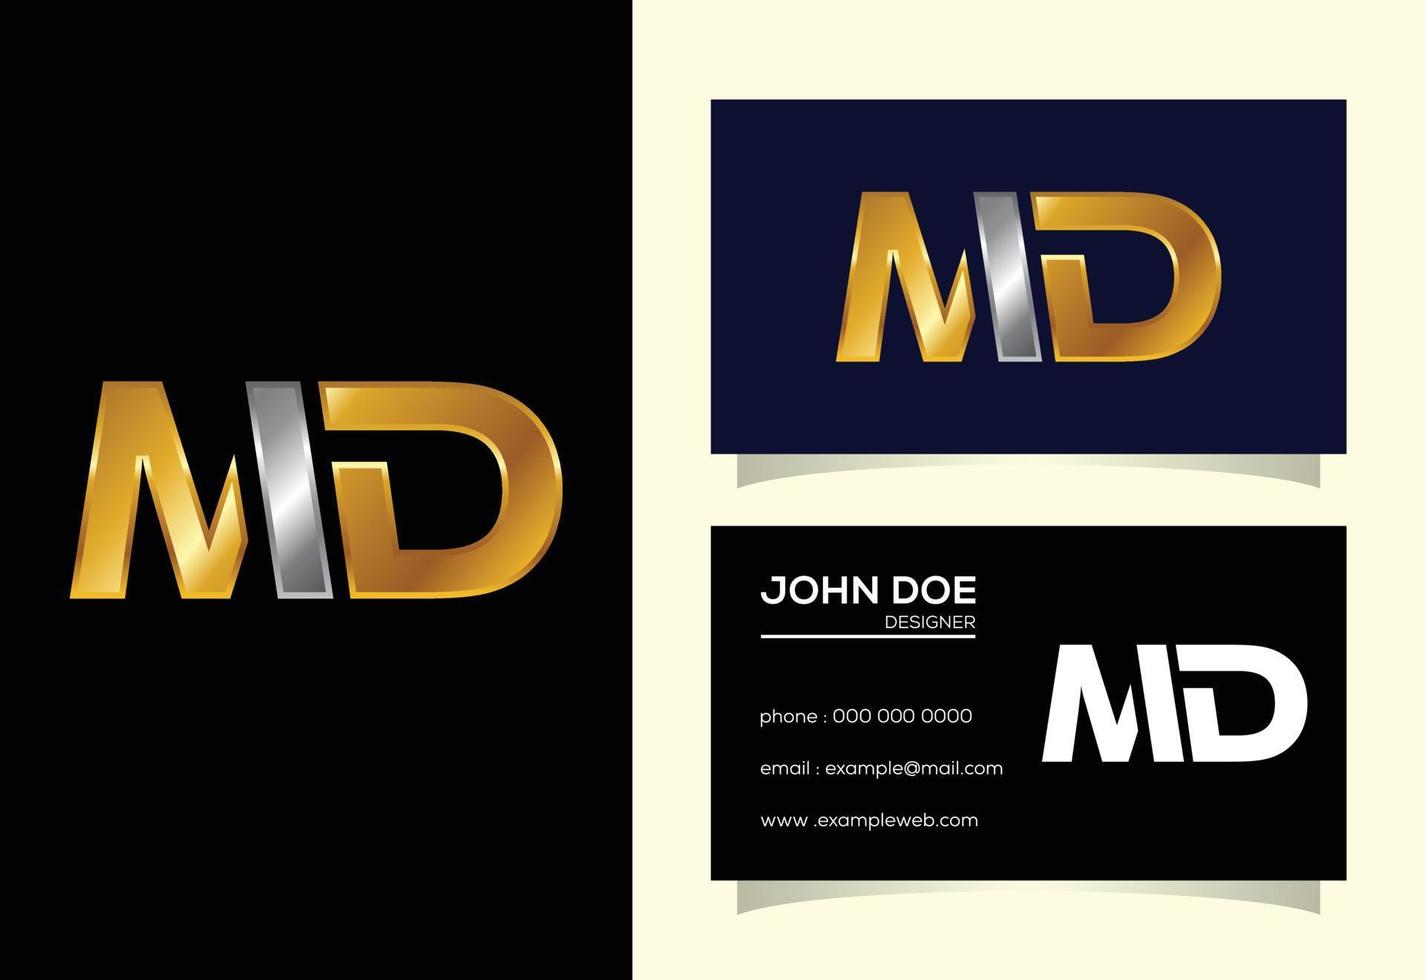 lettre initiale vecteur de conception de logo md. symbole de l'alphabet graphique pour l'identité de l'entreprise